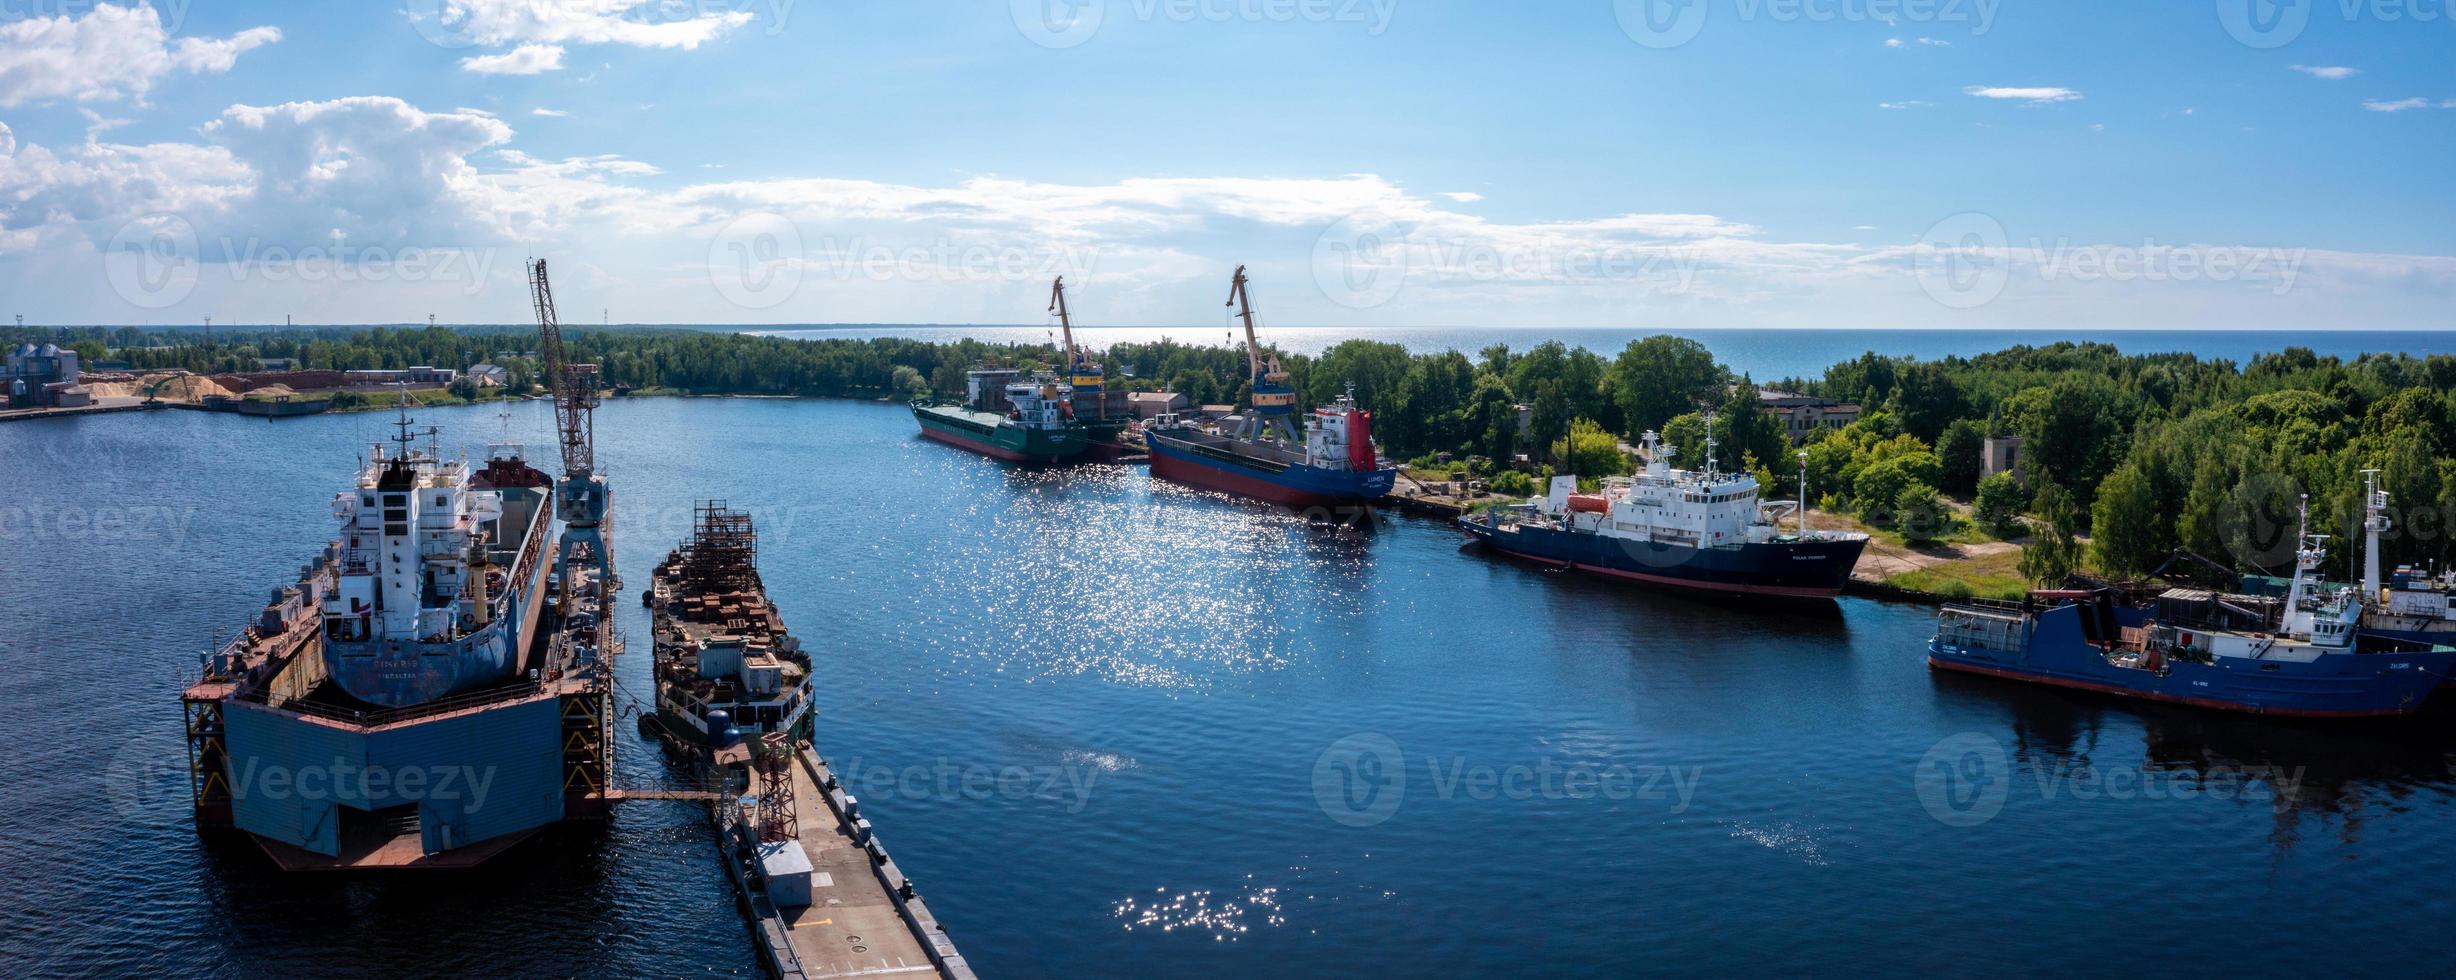 Riga, Letland. 10 juni 2021. vrachtschip bij drijvend droogdok wordt gerenoveerd foto